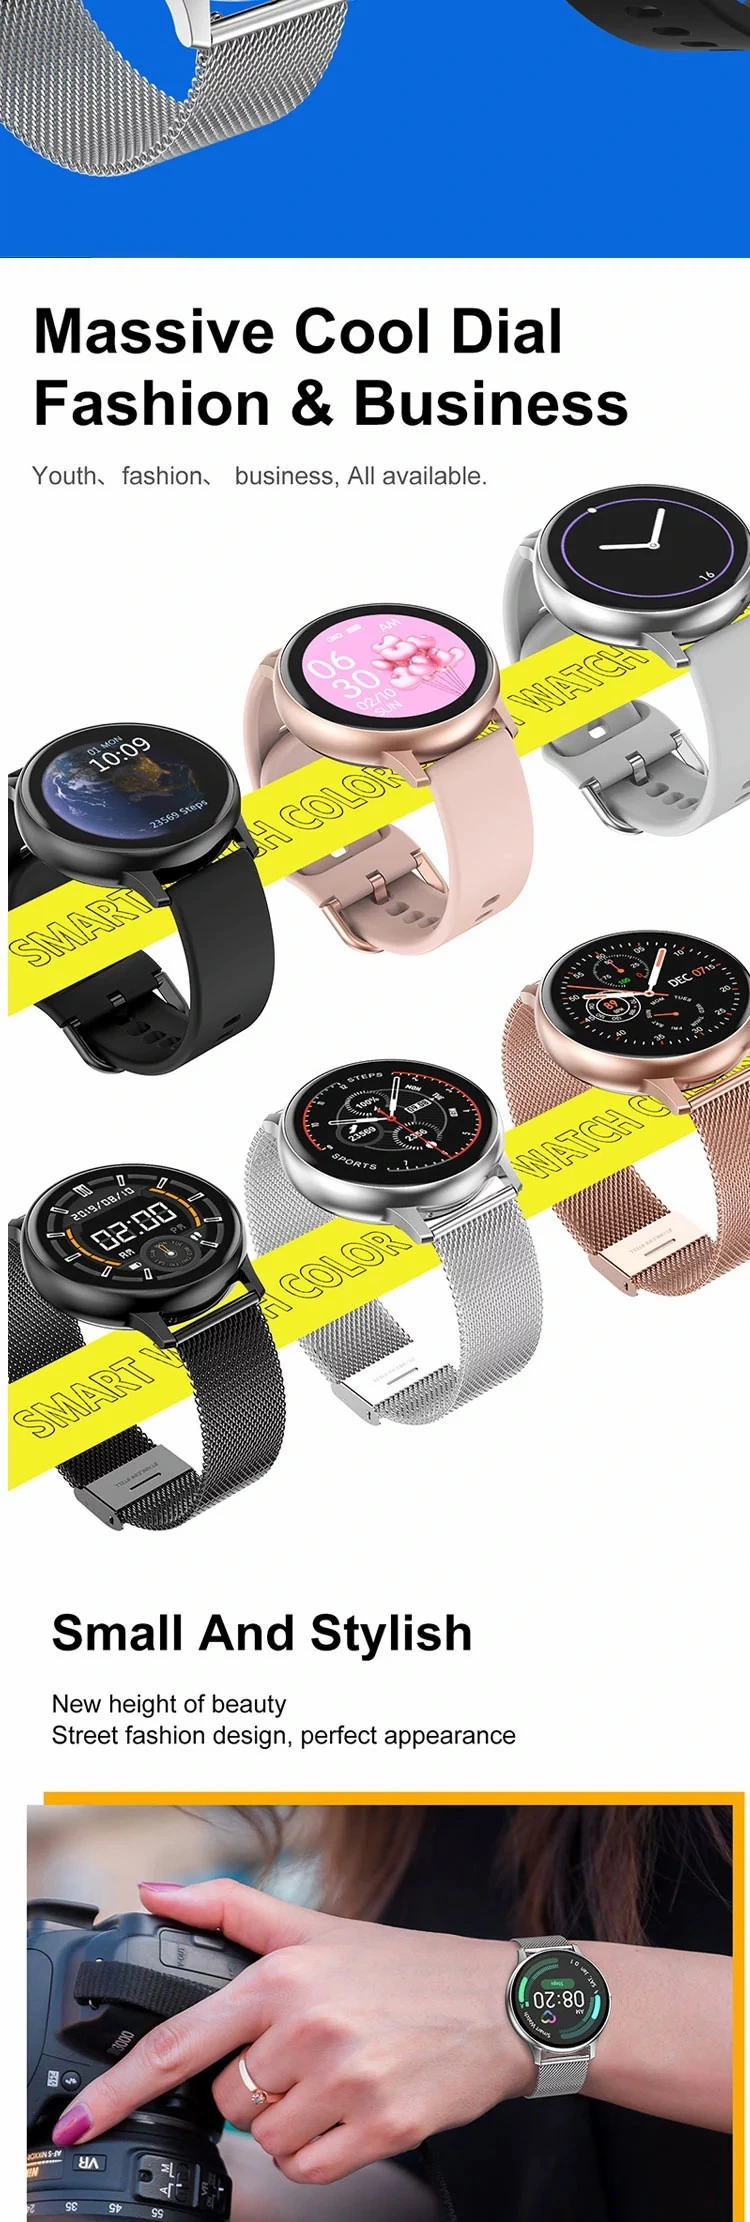 New Arrival PRO Smartwatch ECG Heart Rate Monitoring Men Women Luxury Sports Smart Watch Bracelet